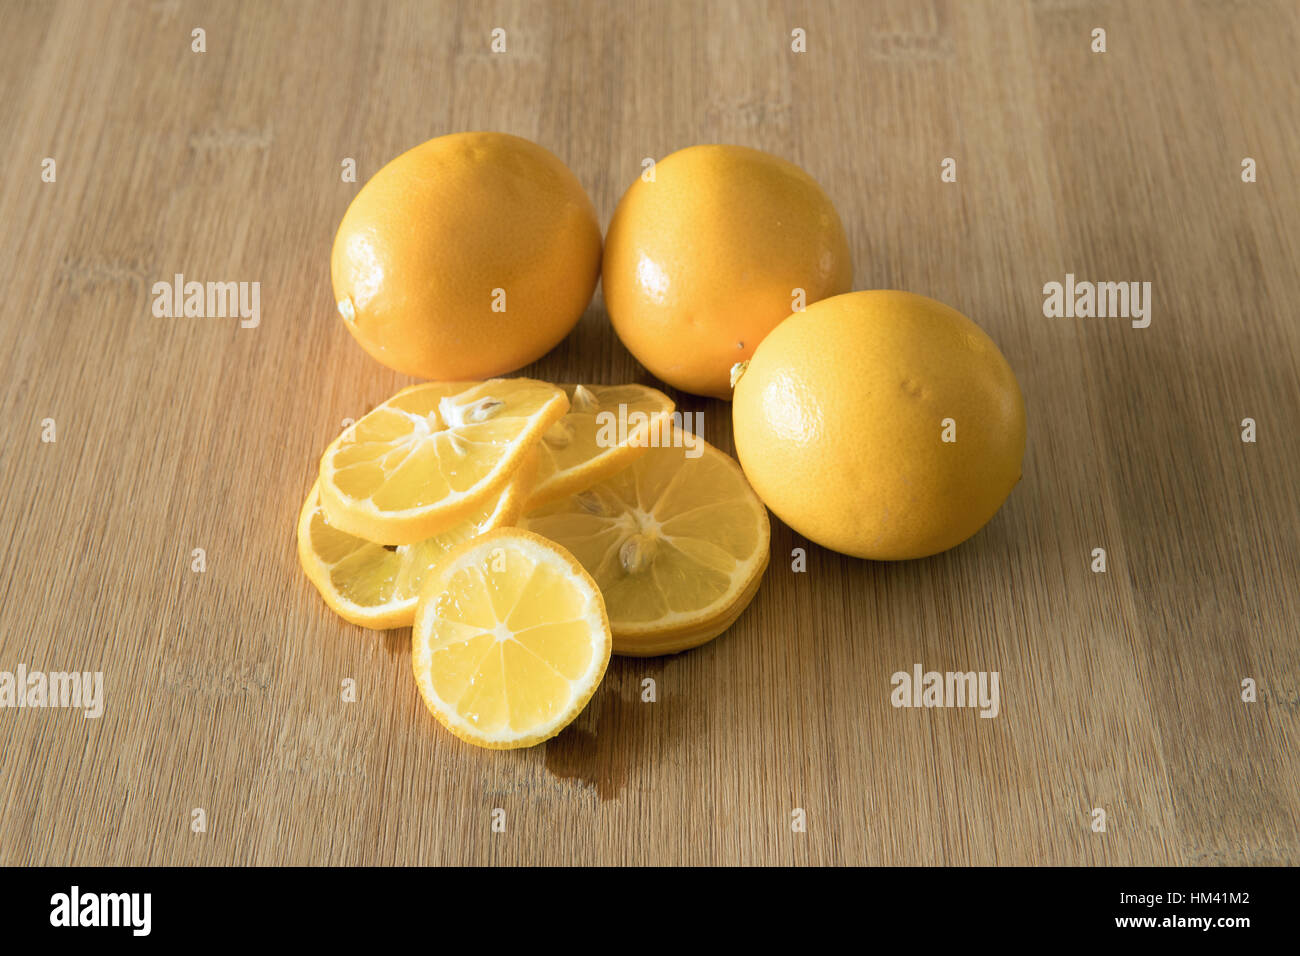 Affettato e unsliced limoni sul bordo di taglio Foto Stock